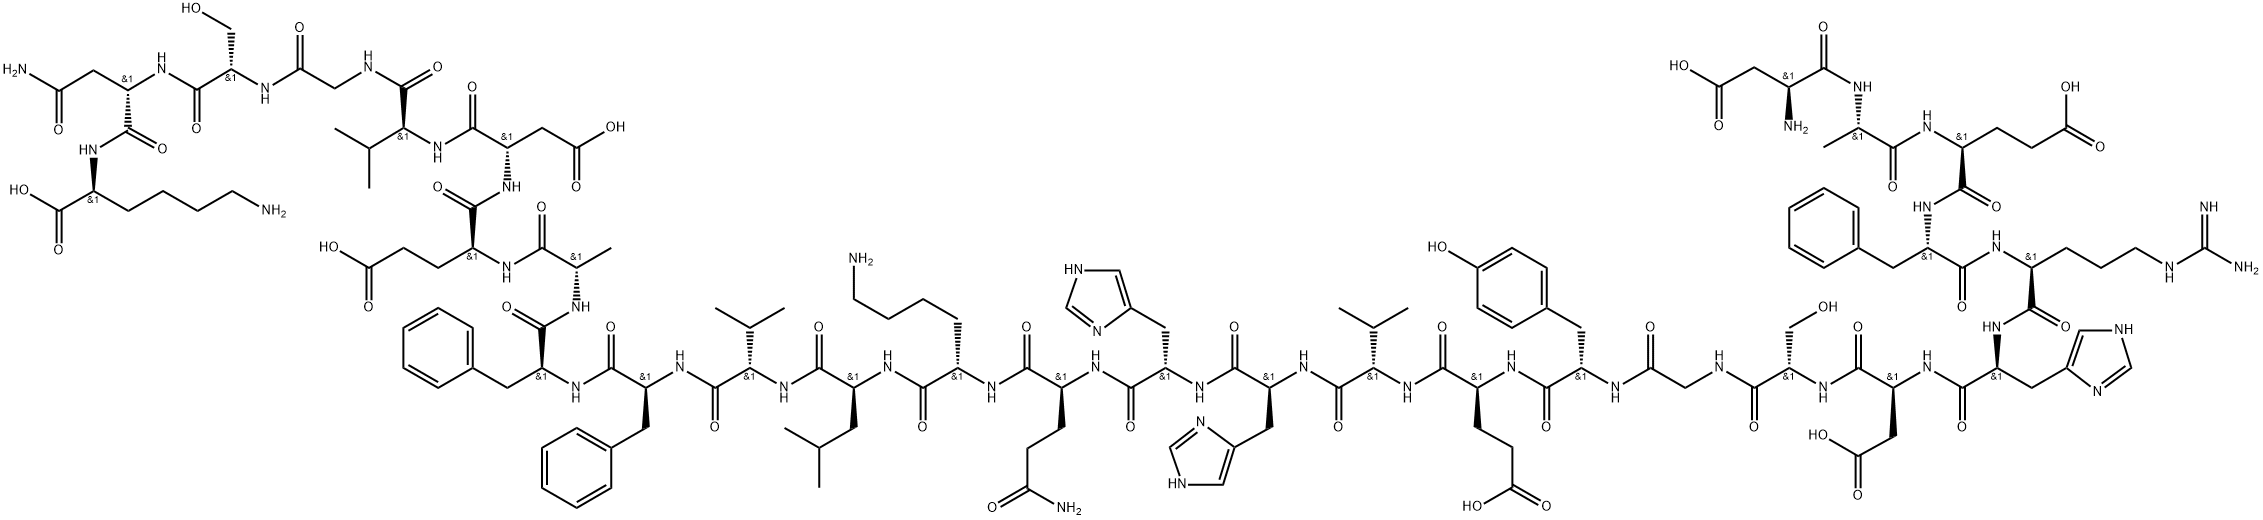 109770-29-8 アミロイドΒ-プロテイン (1-28)